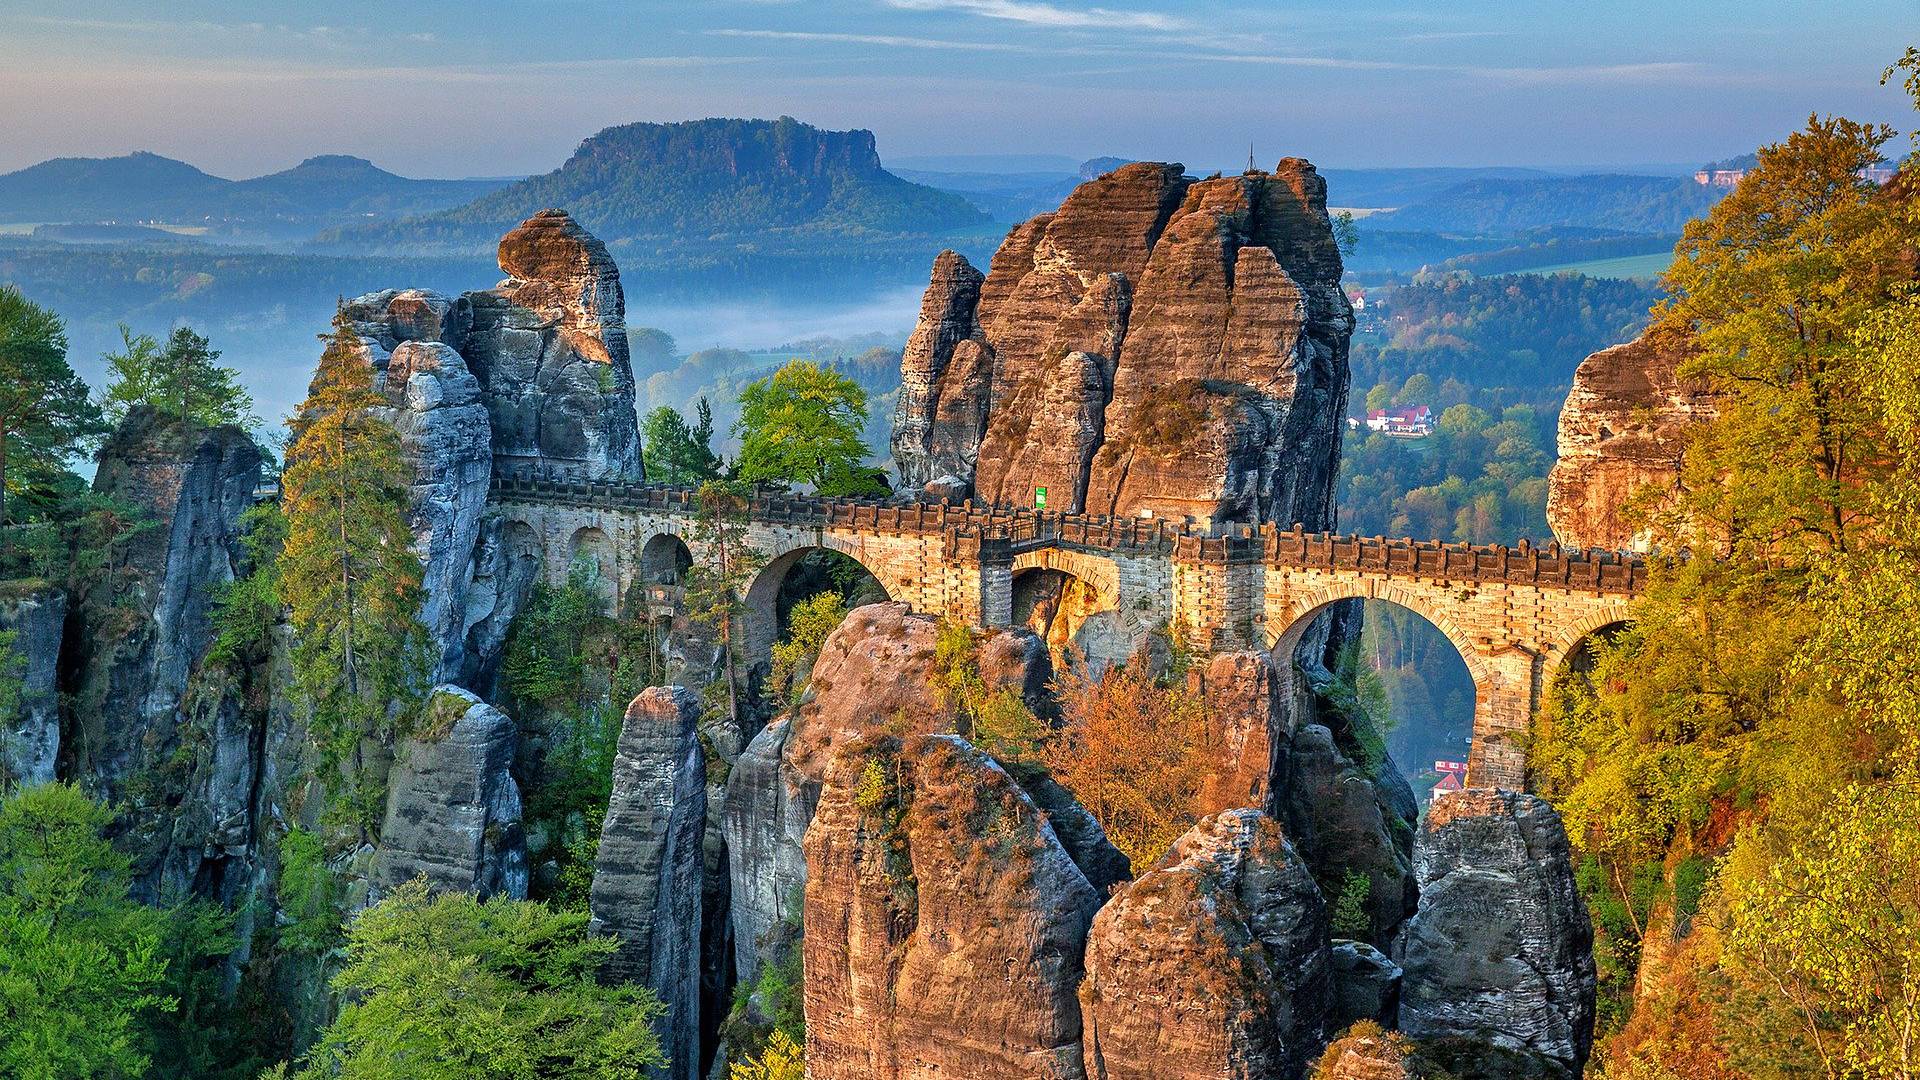 Basteibrücke in der Sächsischen Schweiz